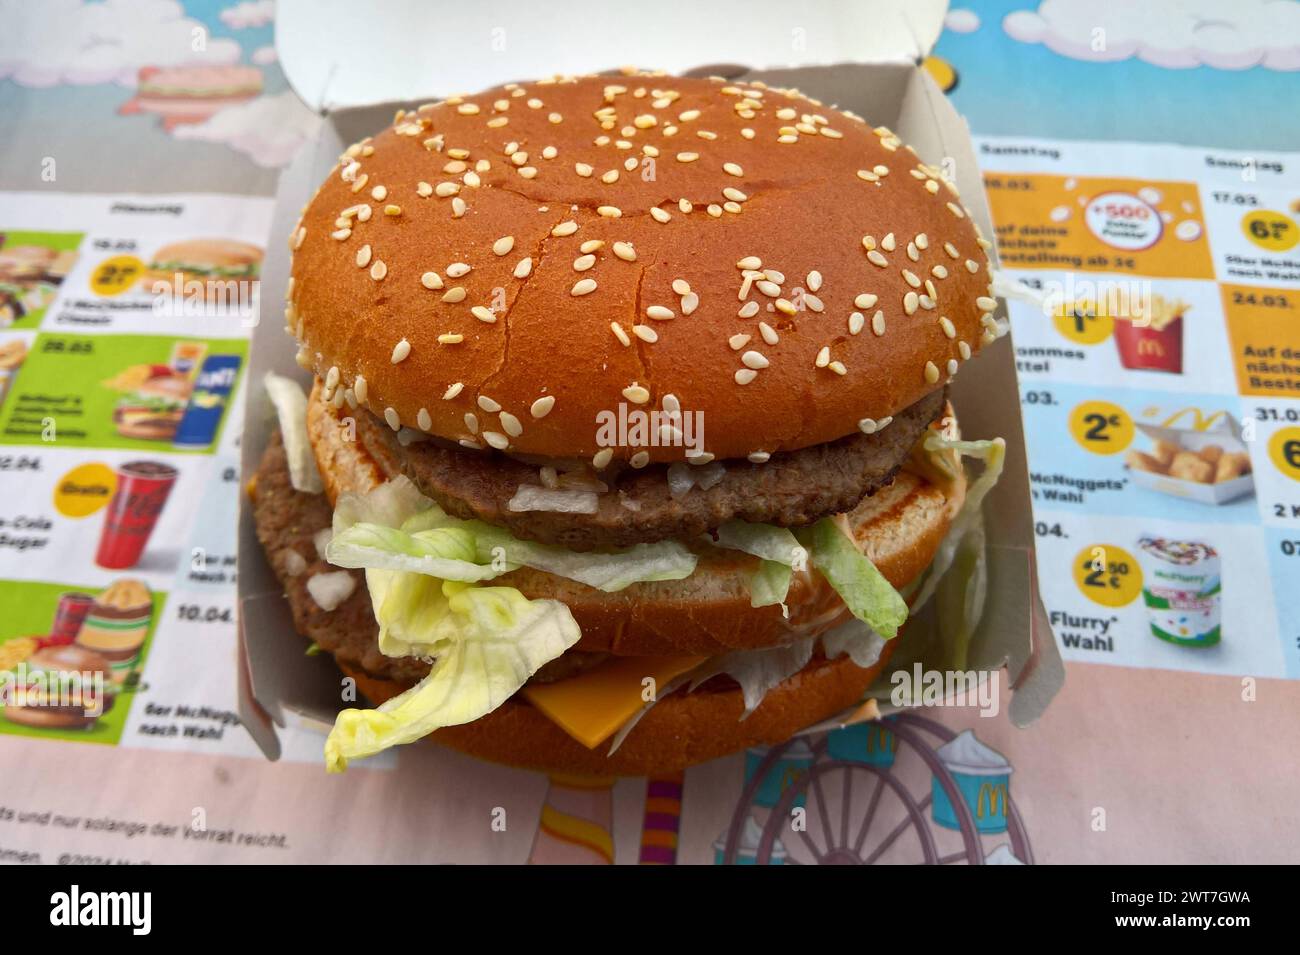 Der Big Mac, in Deutschland früher auch als Big Mäc bezeichnet, ist eine doppelstöckige Cheeseburger-Variante des Fast-Food-Konzerns McDonald. Die McDonalds Corporation ist ein US-amerikanischer Betreiber und Franchisegeber von weltweit vertretenen Schnellrestaurants und der umsatzstärkste Fastfood-Konzern der Welt *** The Big Mac, formerly known as the Big Mäc in Germany, is a double-decker cheeseburger variant of the McDonalds fast food group The McDonalds Corporation is an American operator and franchisor of fast food restaurants worldwide and the worlds highest-selling fast food group Stock Photo